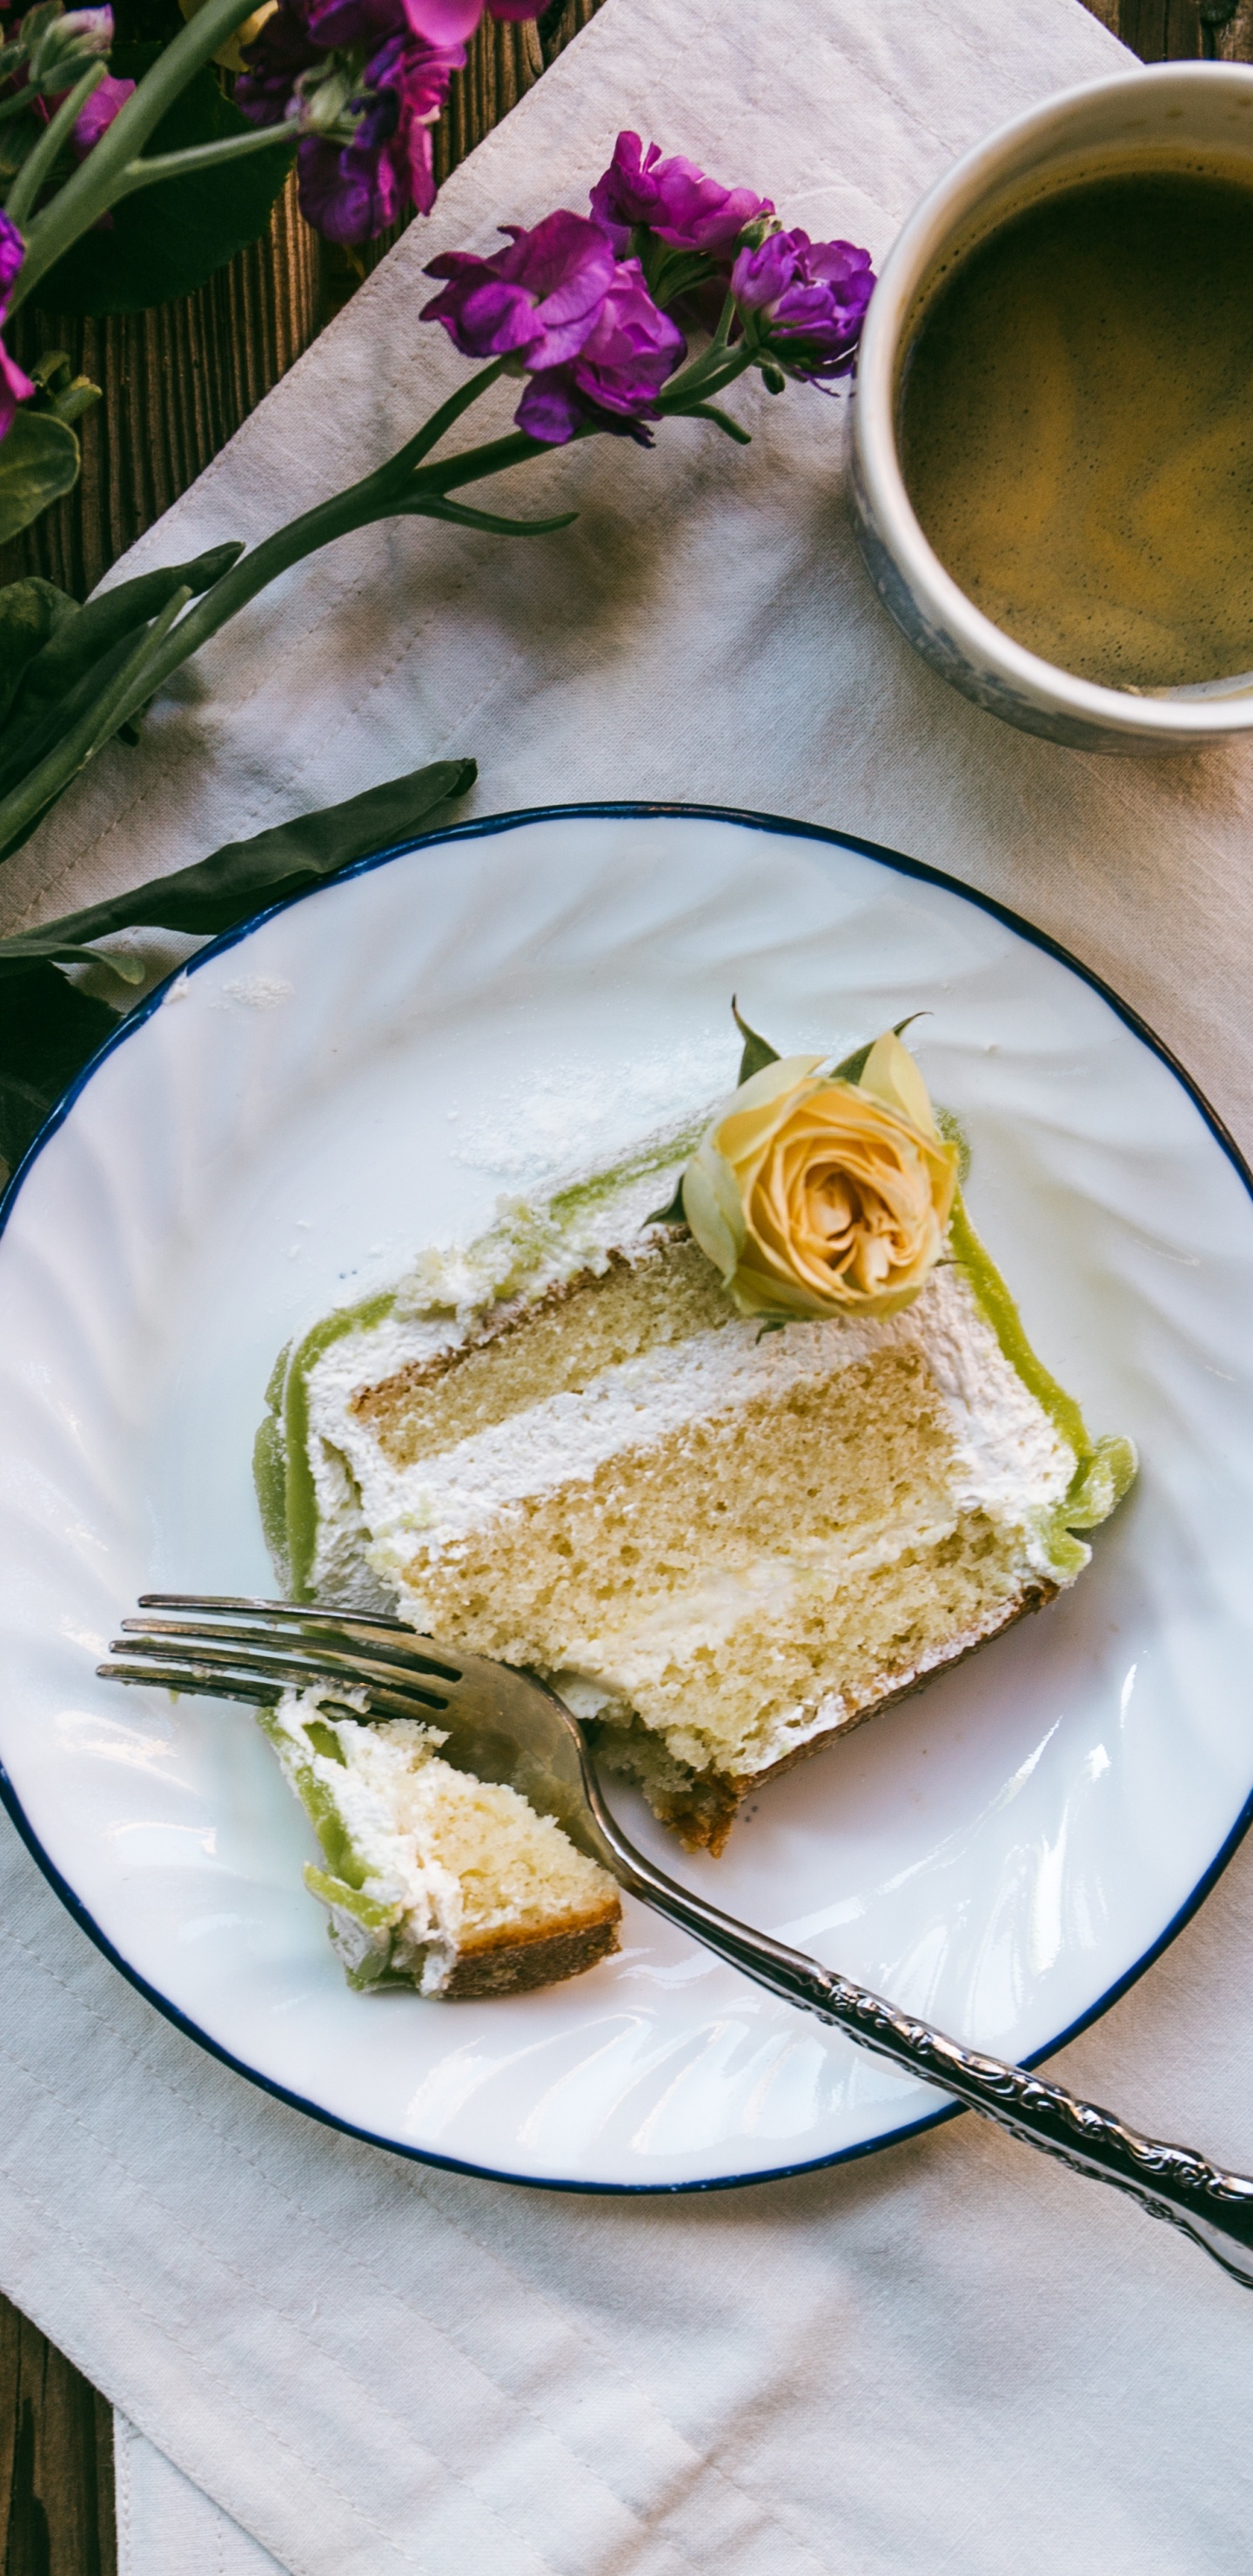 Sliced Cake on White Ceramic Plate Beside Silver Fork. Wallpaper in 1440x2960 Resolution